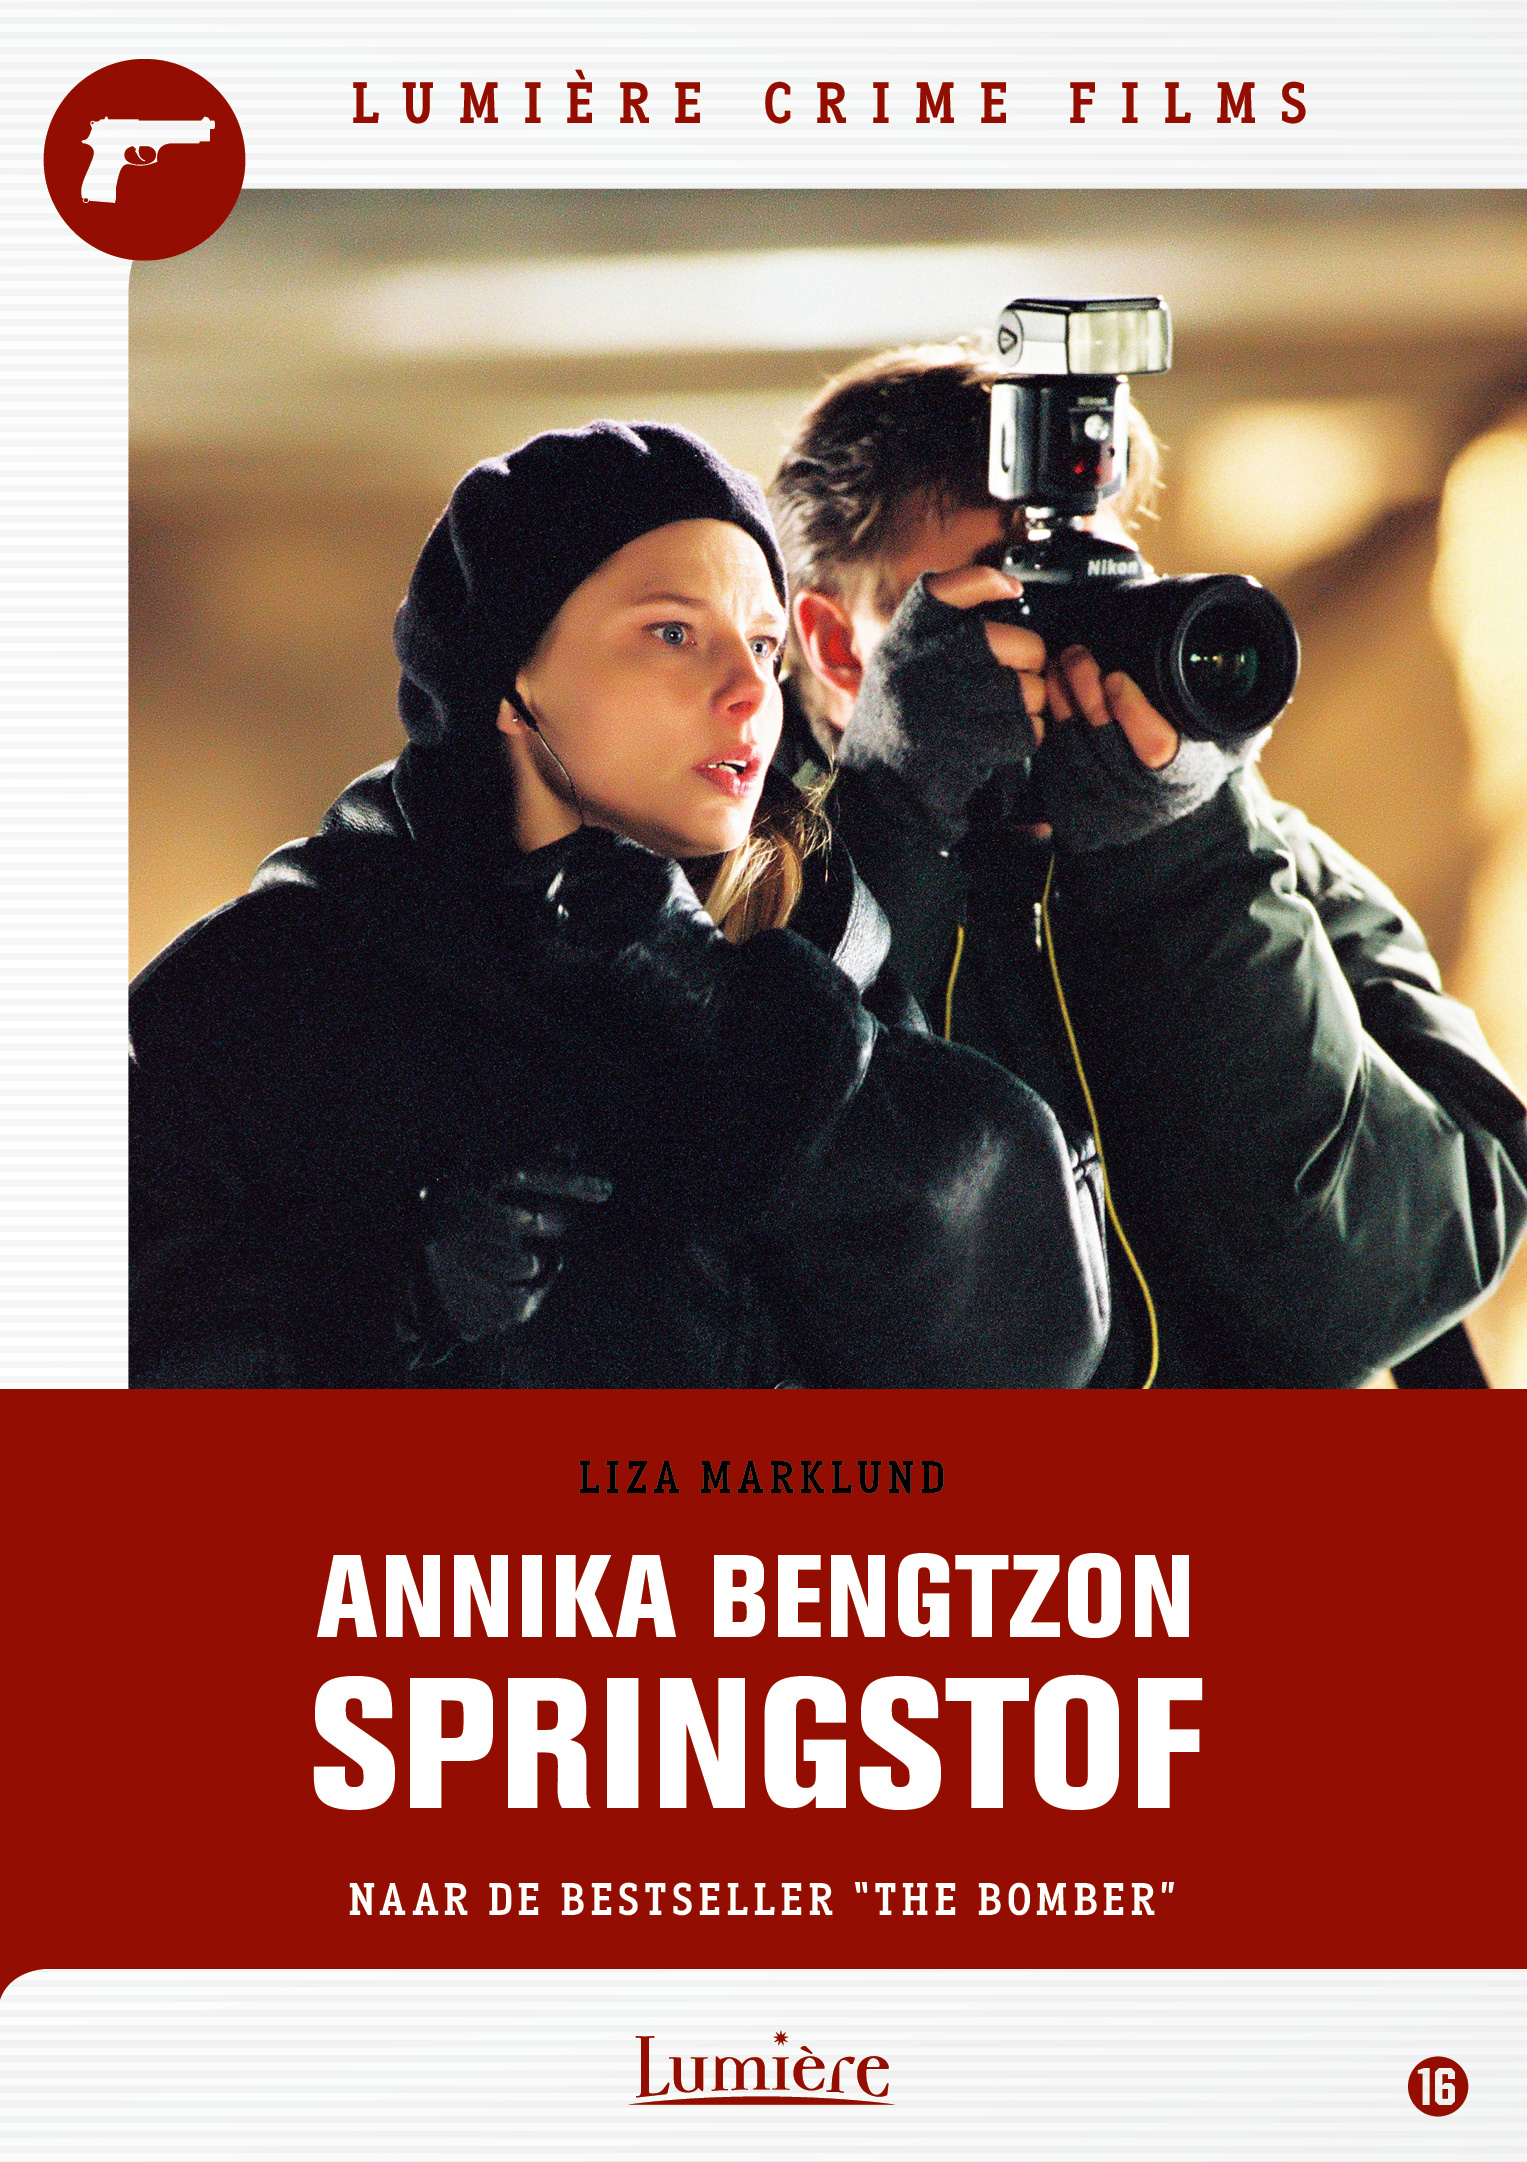 Liza Marklund’s Annika Bengzton: Springstof